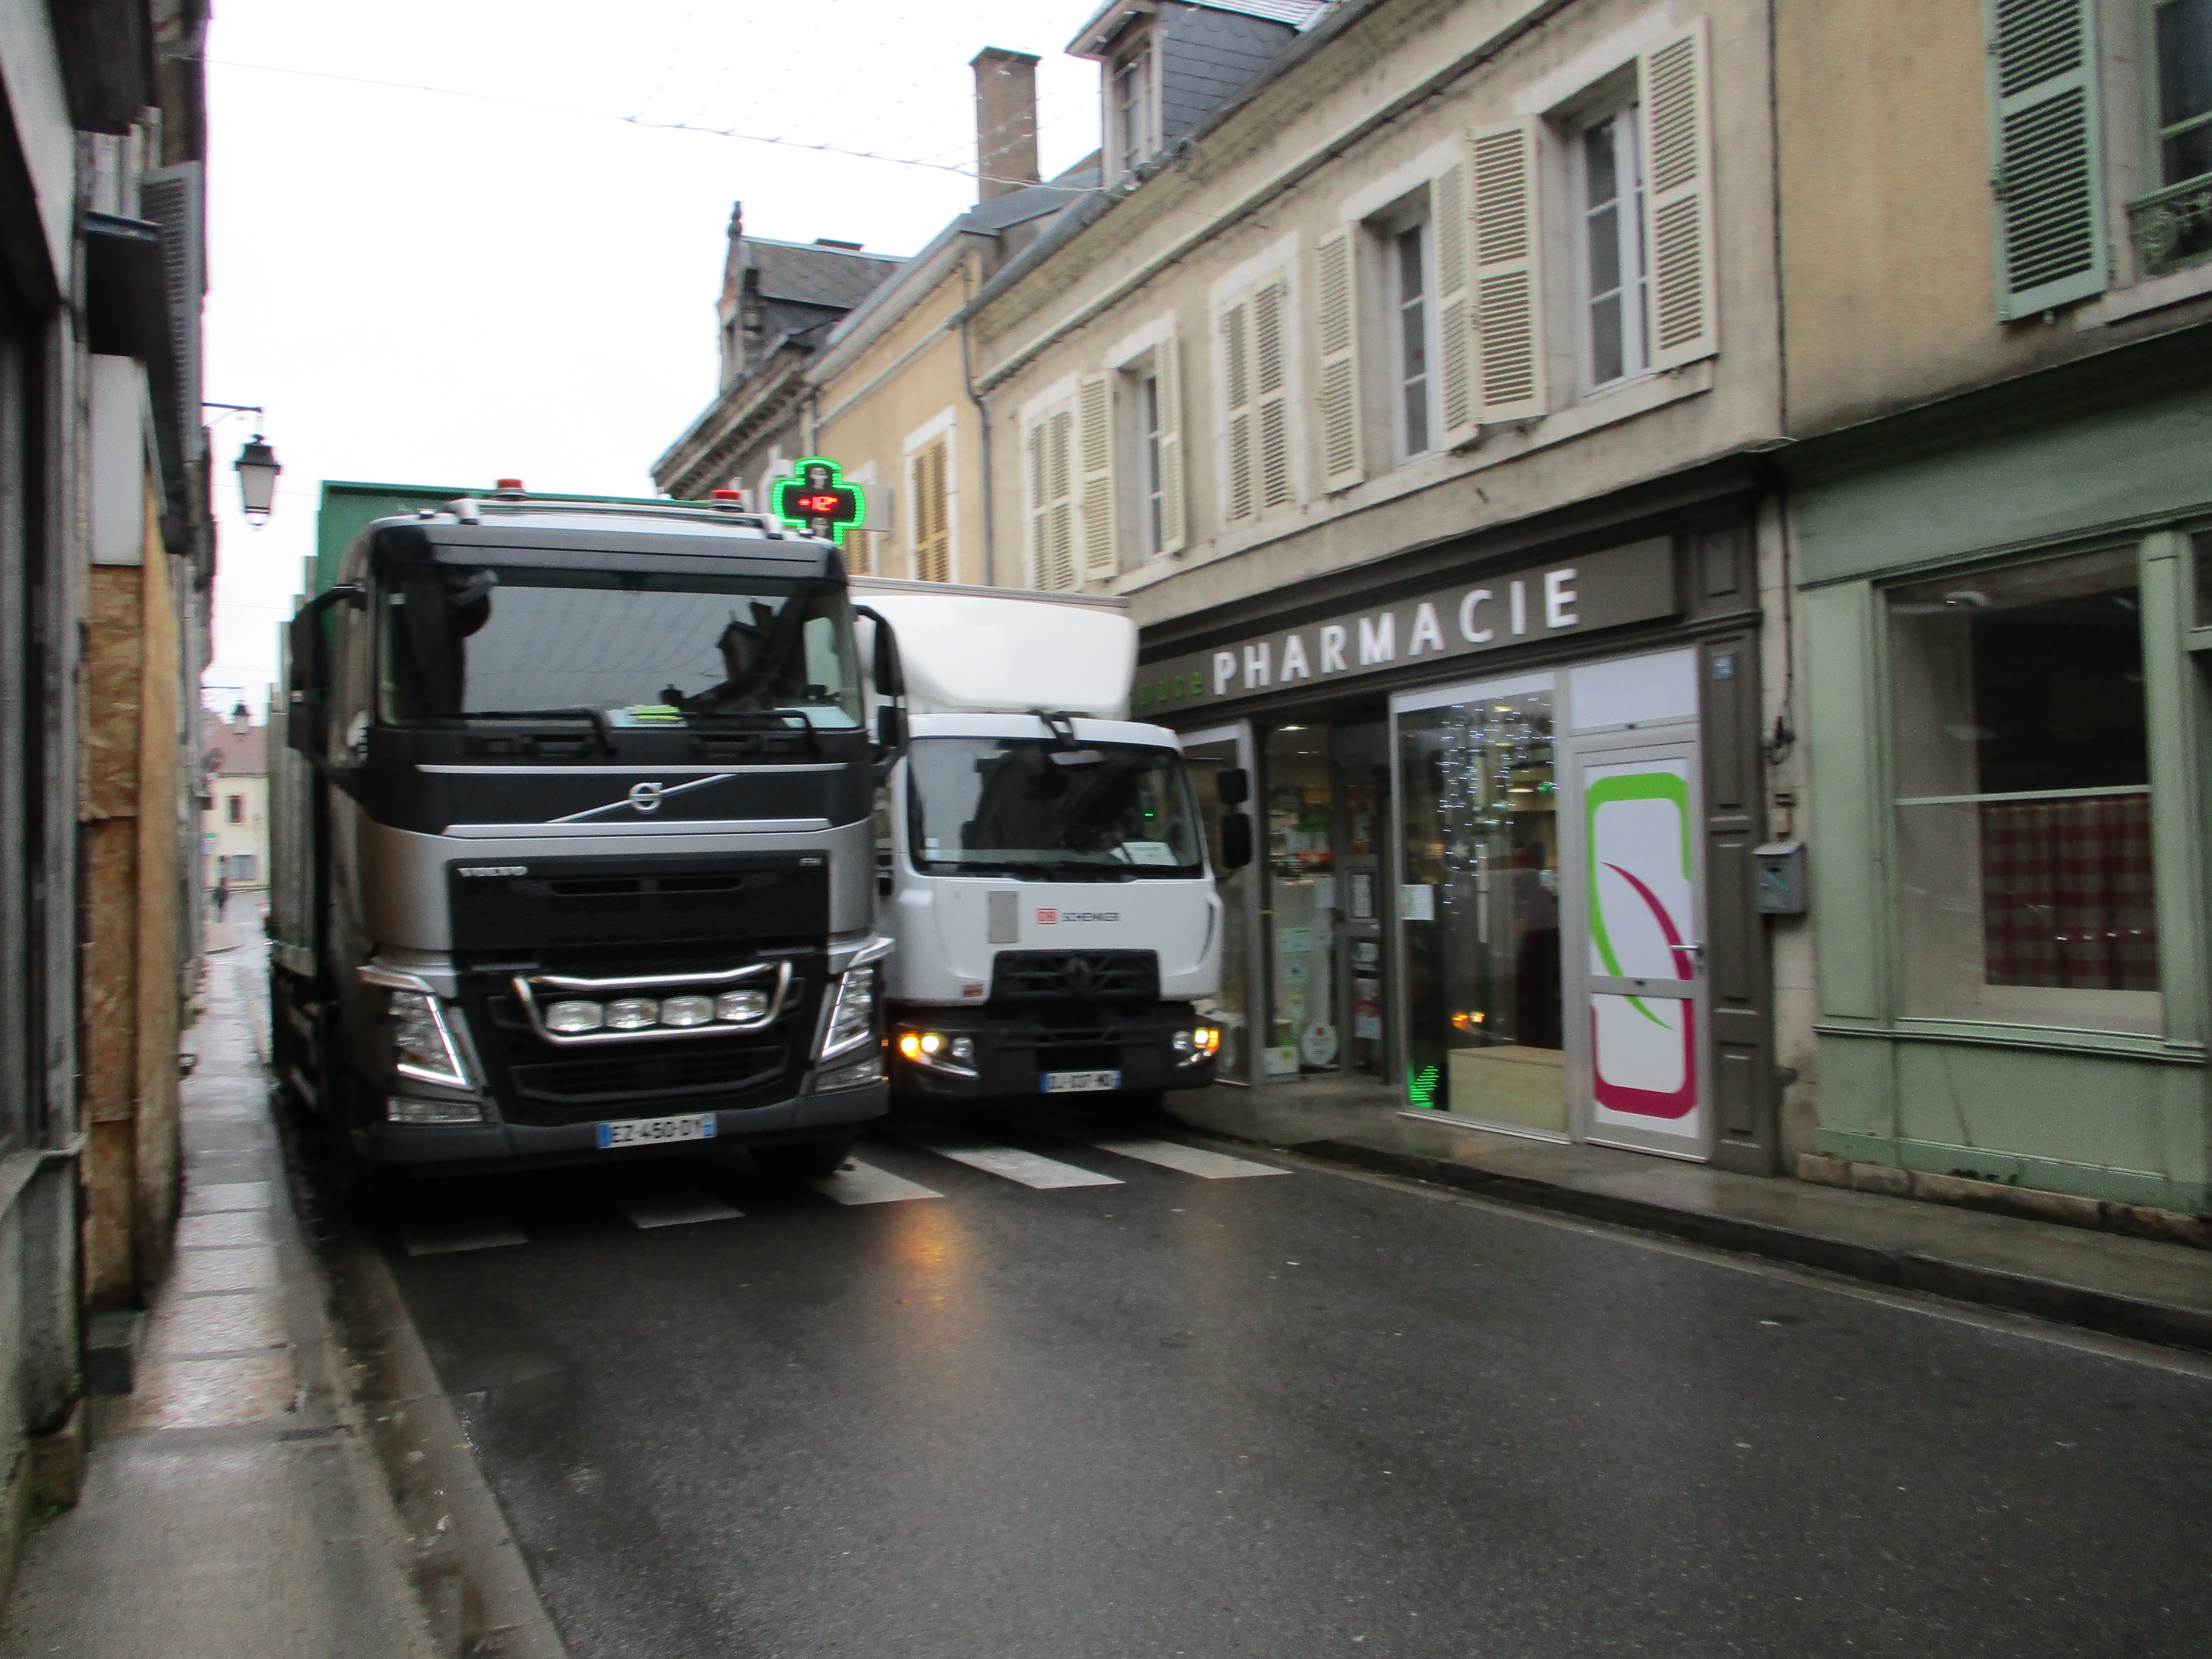 Les rues du centre villes sont trop étroites pour le passage des poids lourds © Châteauneuf suffoque.